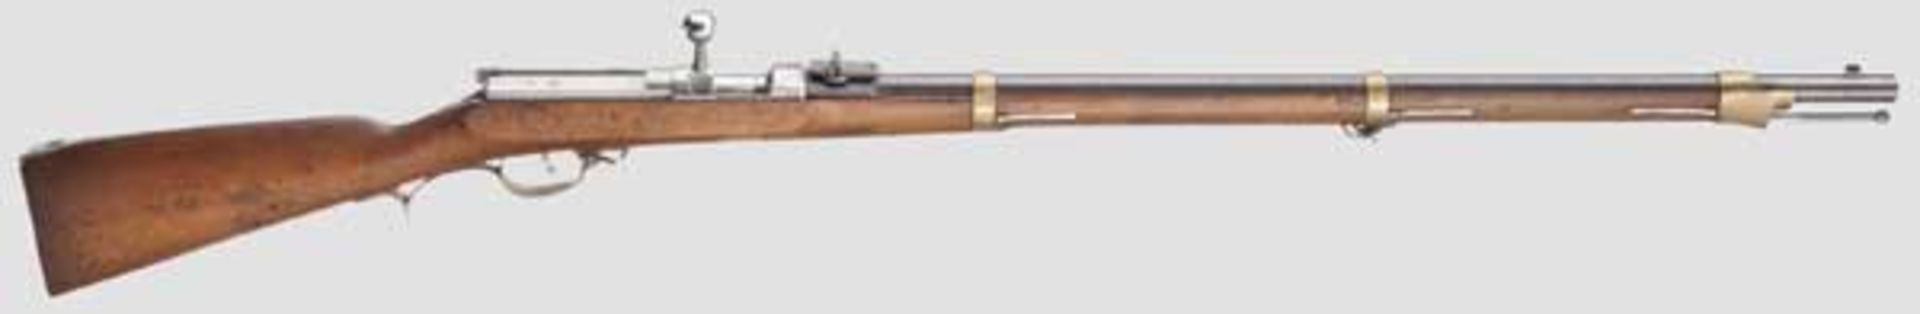 Zündnadelgewehr M 1862 Kaliber 15,4 mm, Nummer 4274, nummerngleich (inkl. der Schrauben). Brünierter